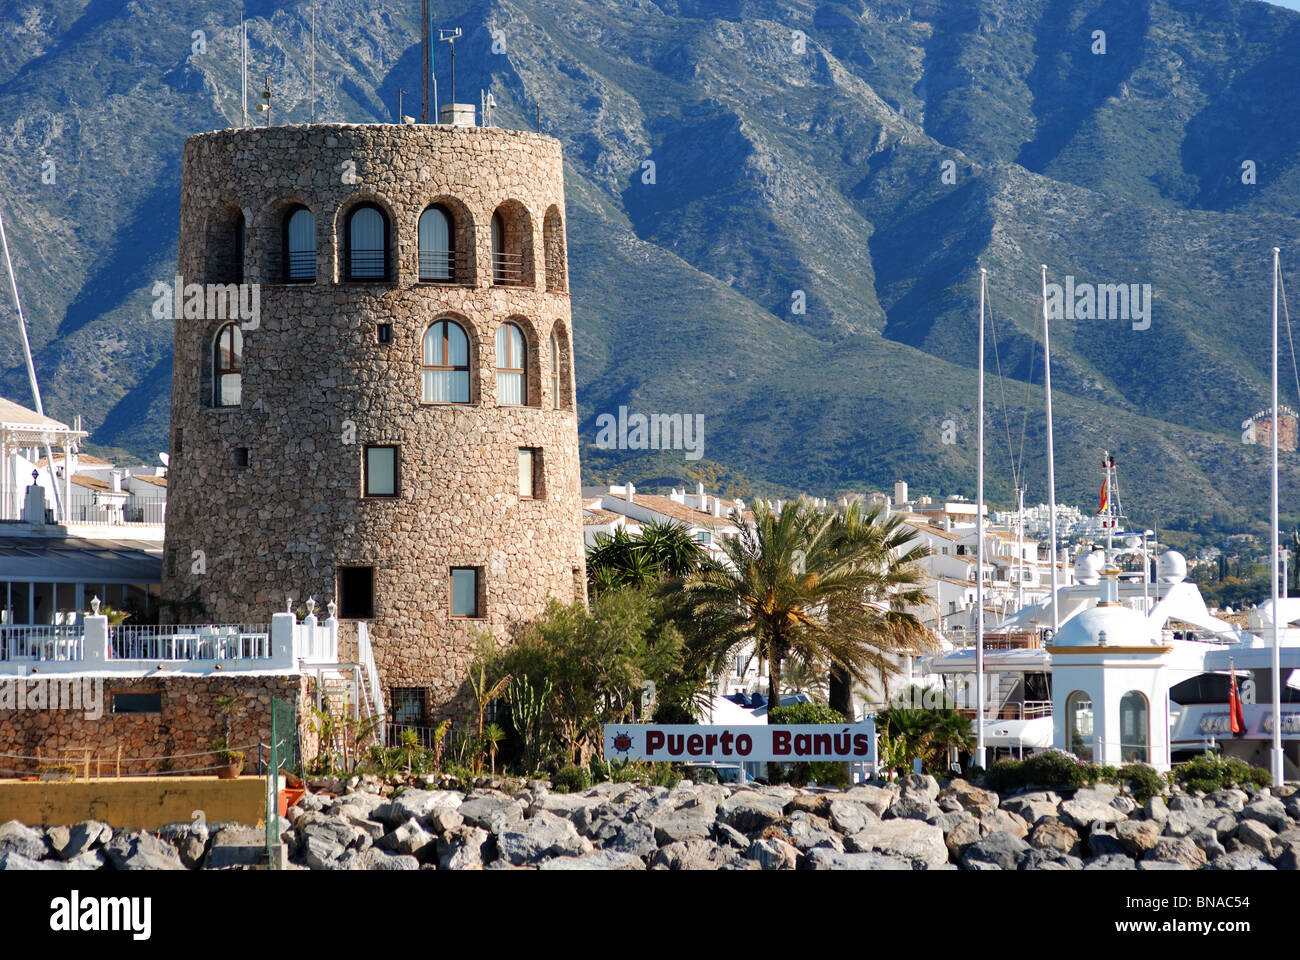 Vista della zona del porto, Puerto Banus a Marbella, Costa del Sol, provincia di Malaga, Andalusia, Spagna, Europa occidentale. Foto Stock